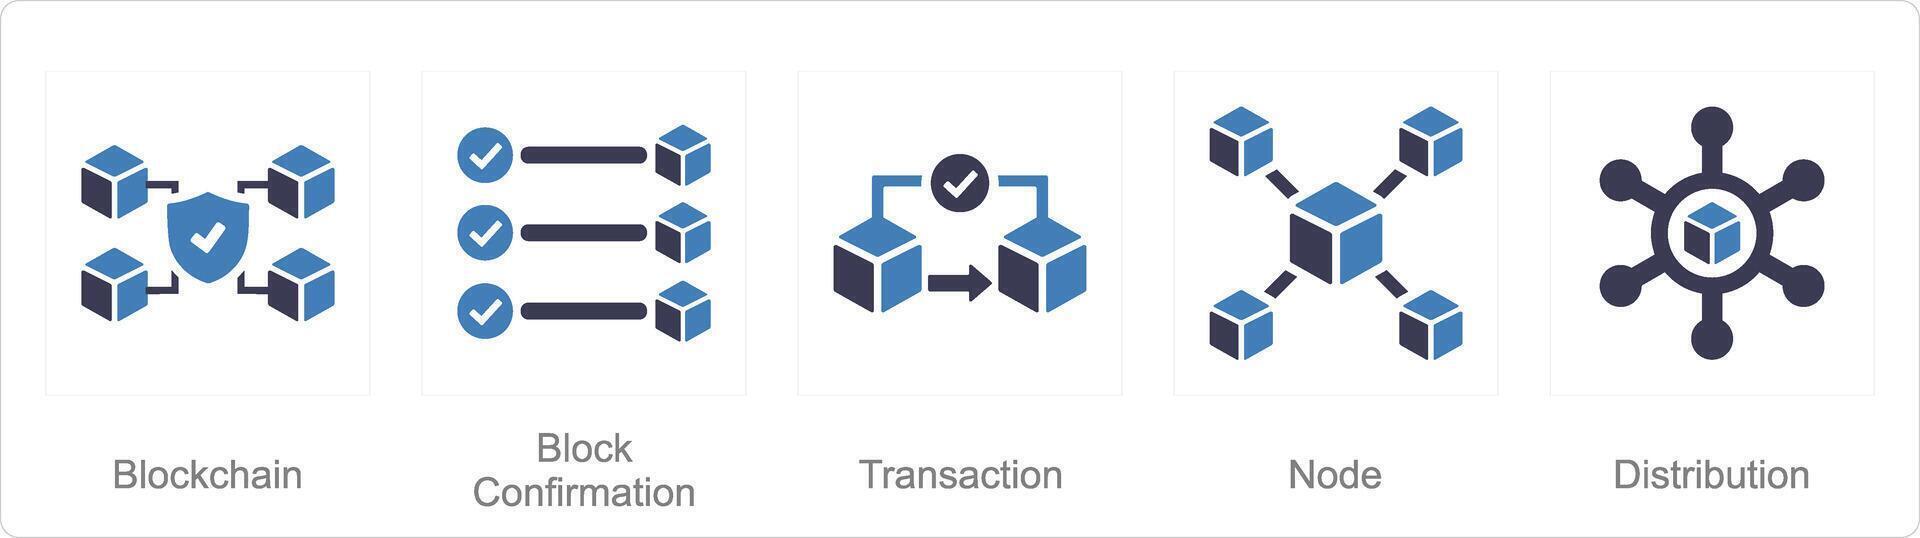 en uppsättning av 5 blockchain ikoner som blockchain, blockera Bekräftelse, transaktion vektor